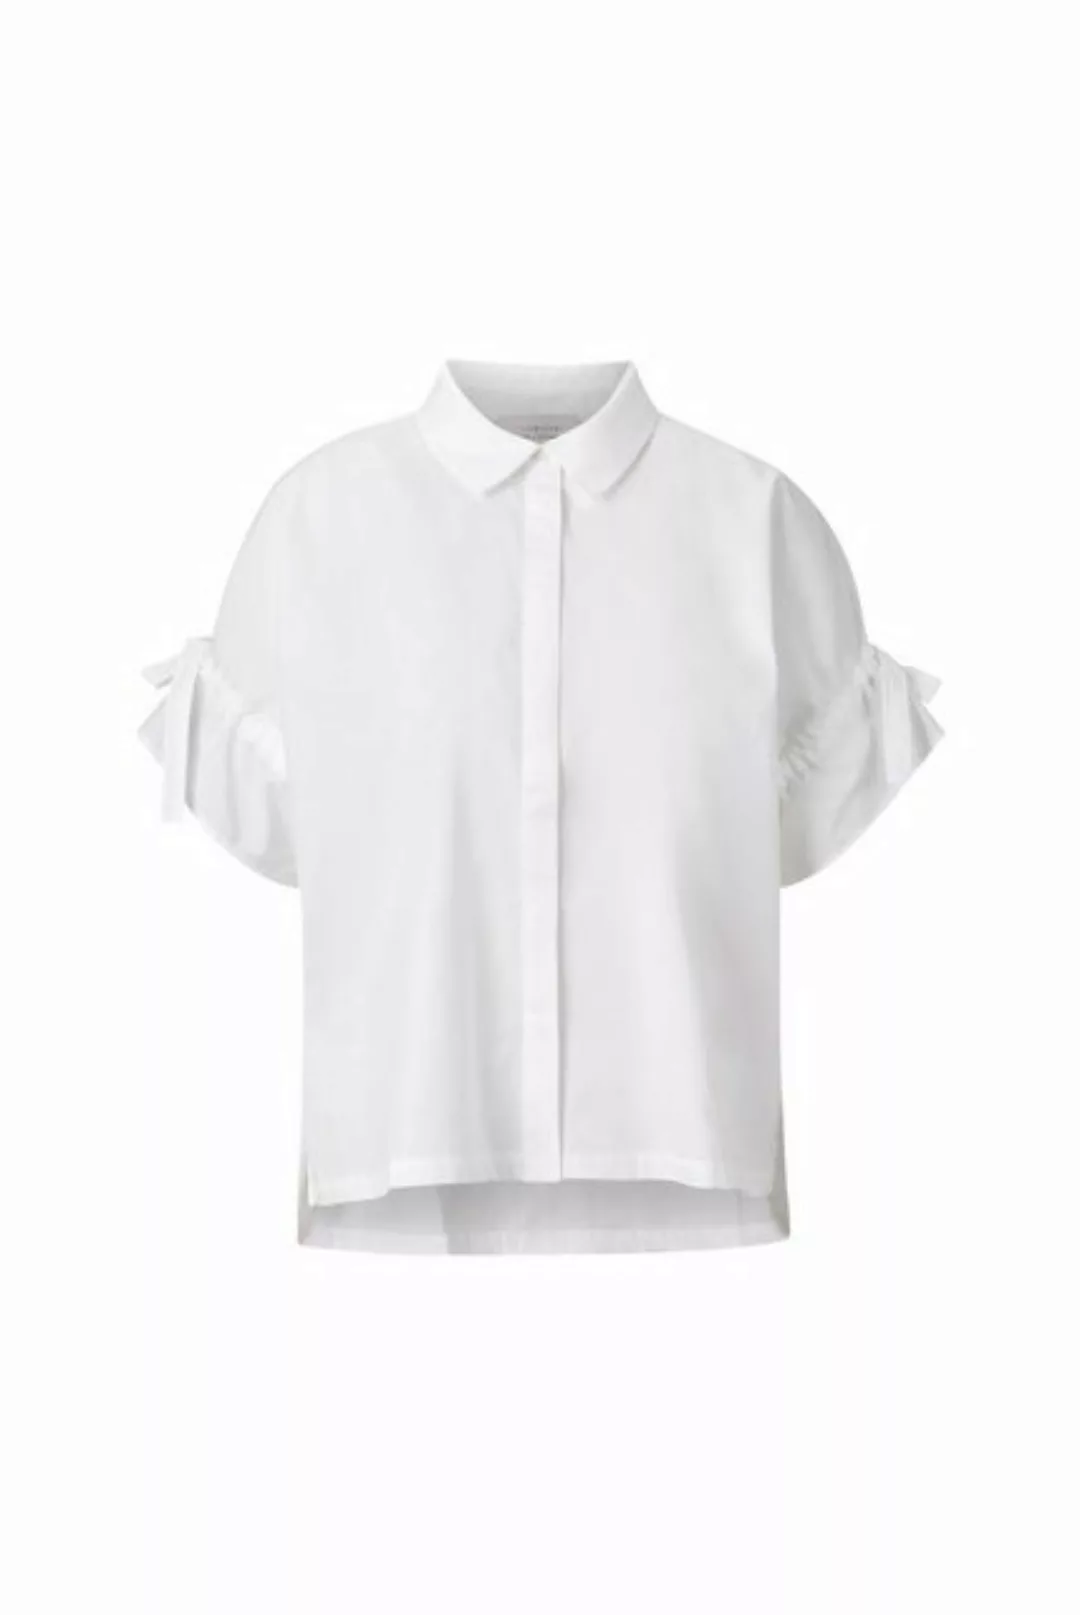 Rich & Royal Hemdbluse blouse with details günstig online kaufen